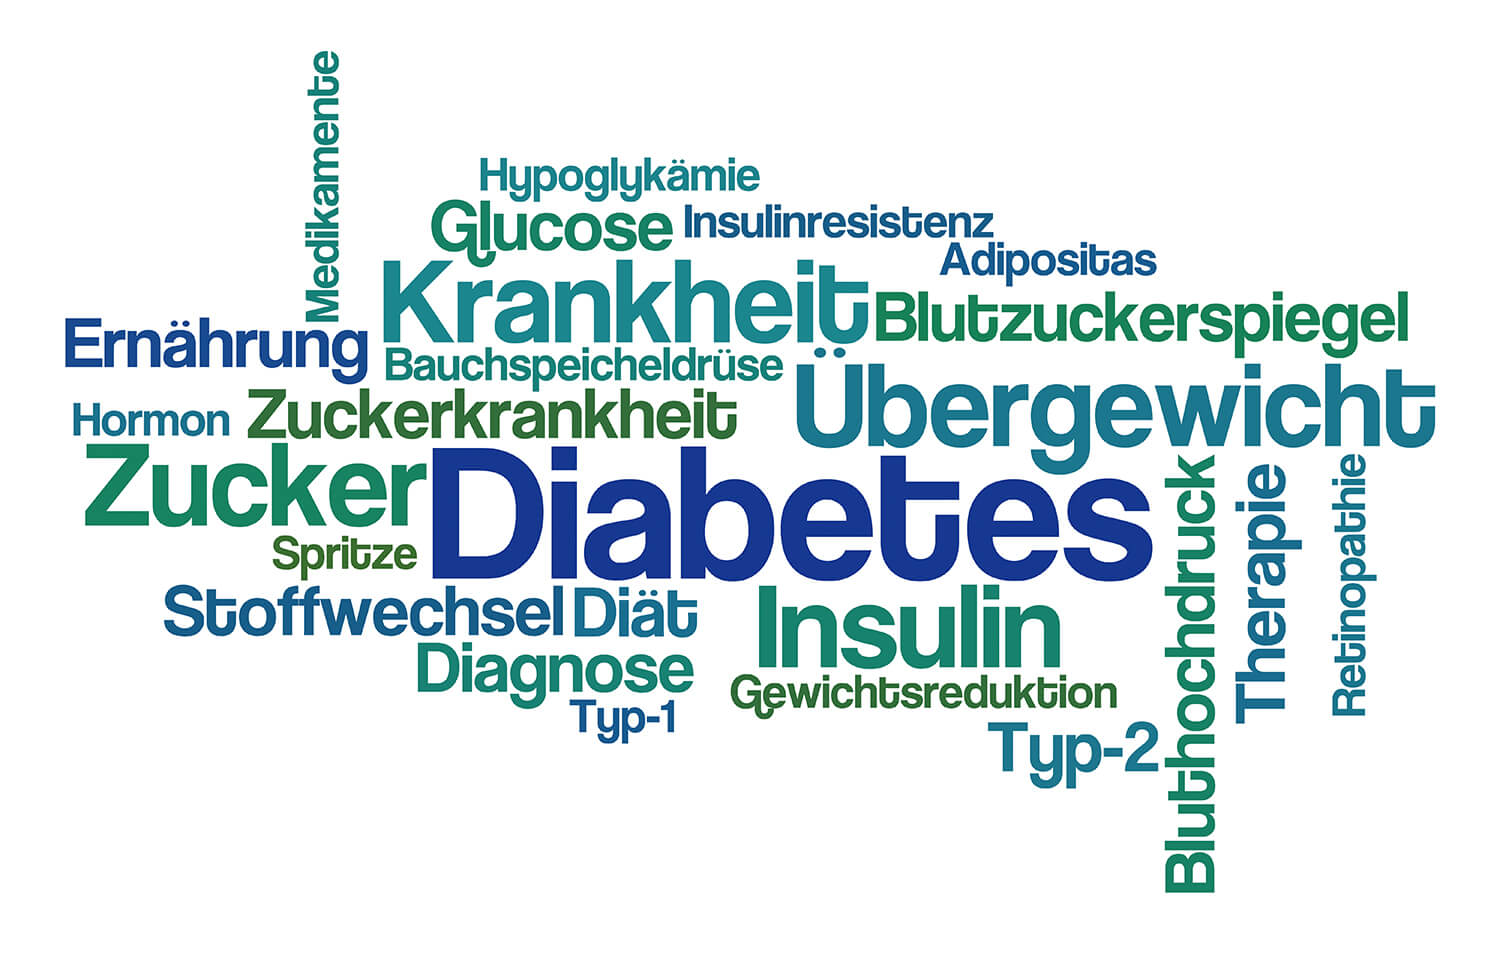 Wortwolke mit Begrifflichkeit zu Diabetes